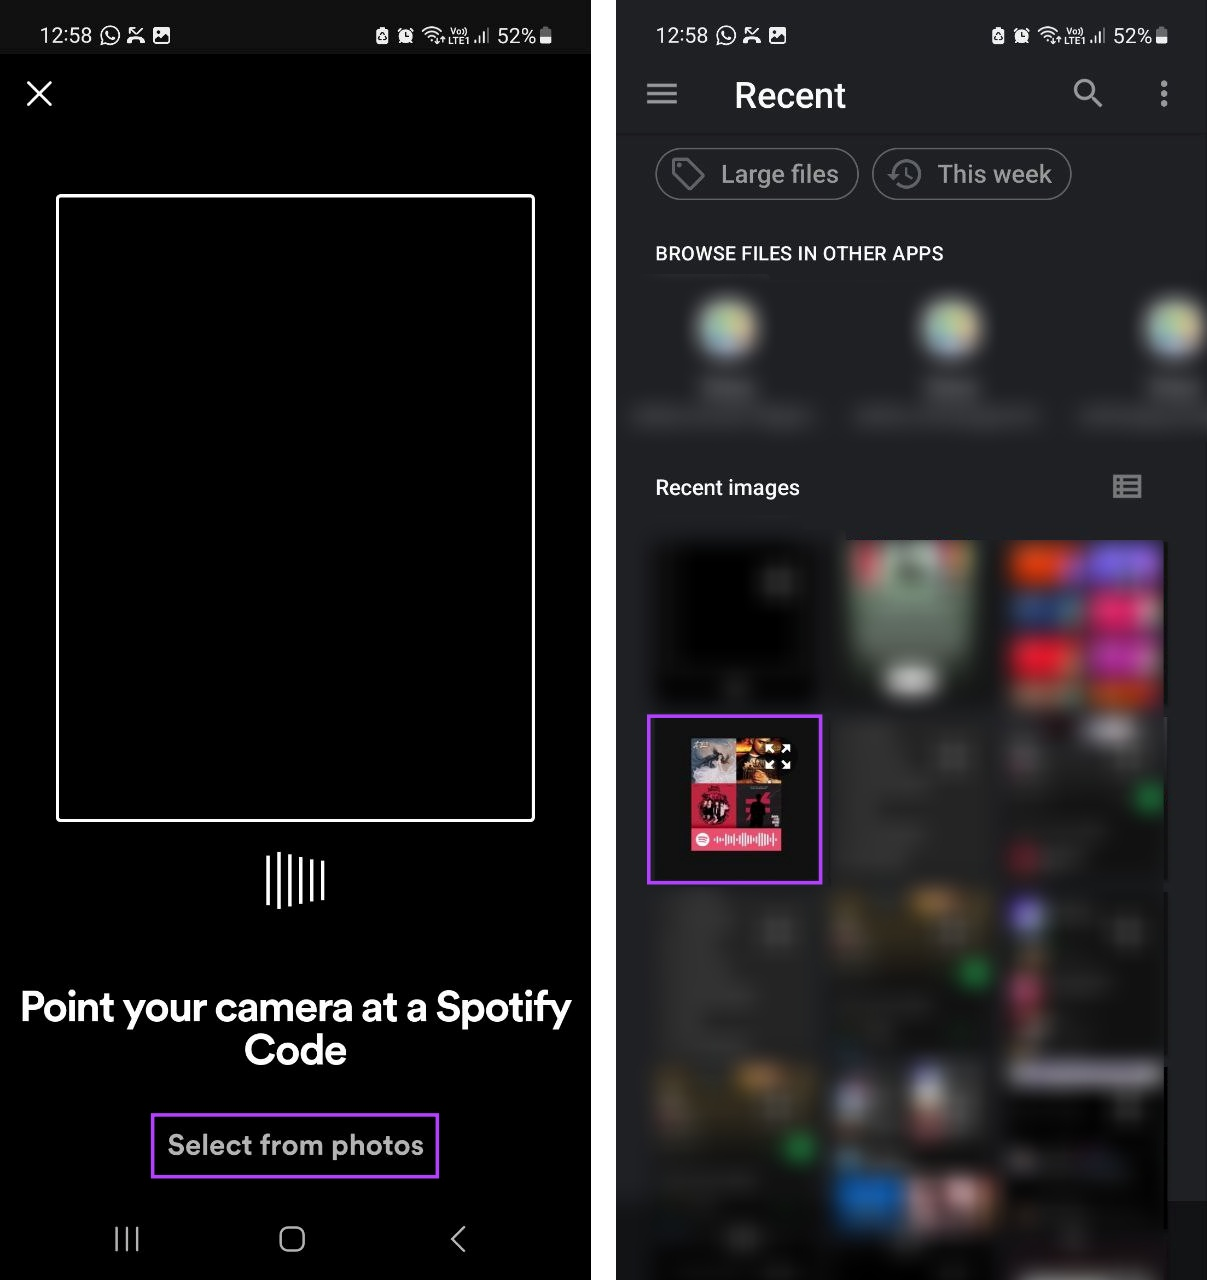 کد Spotify را اسکن کنید